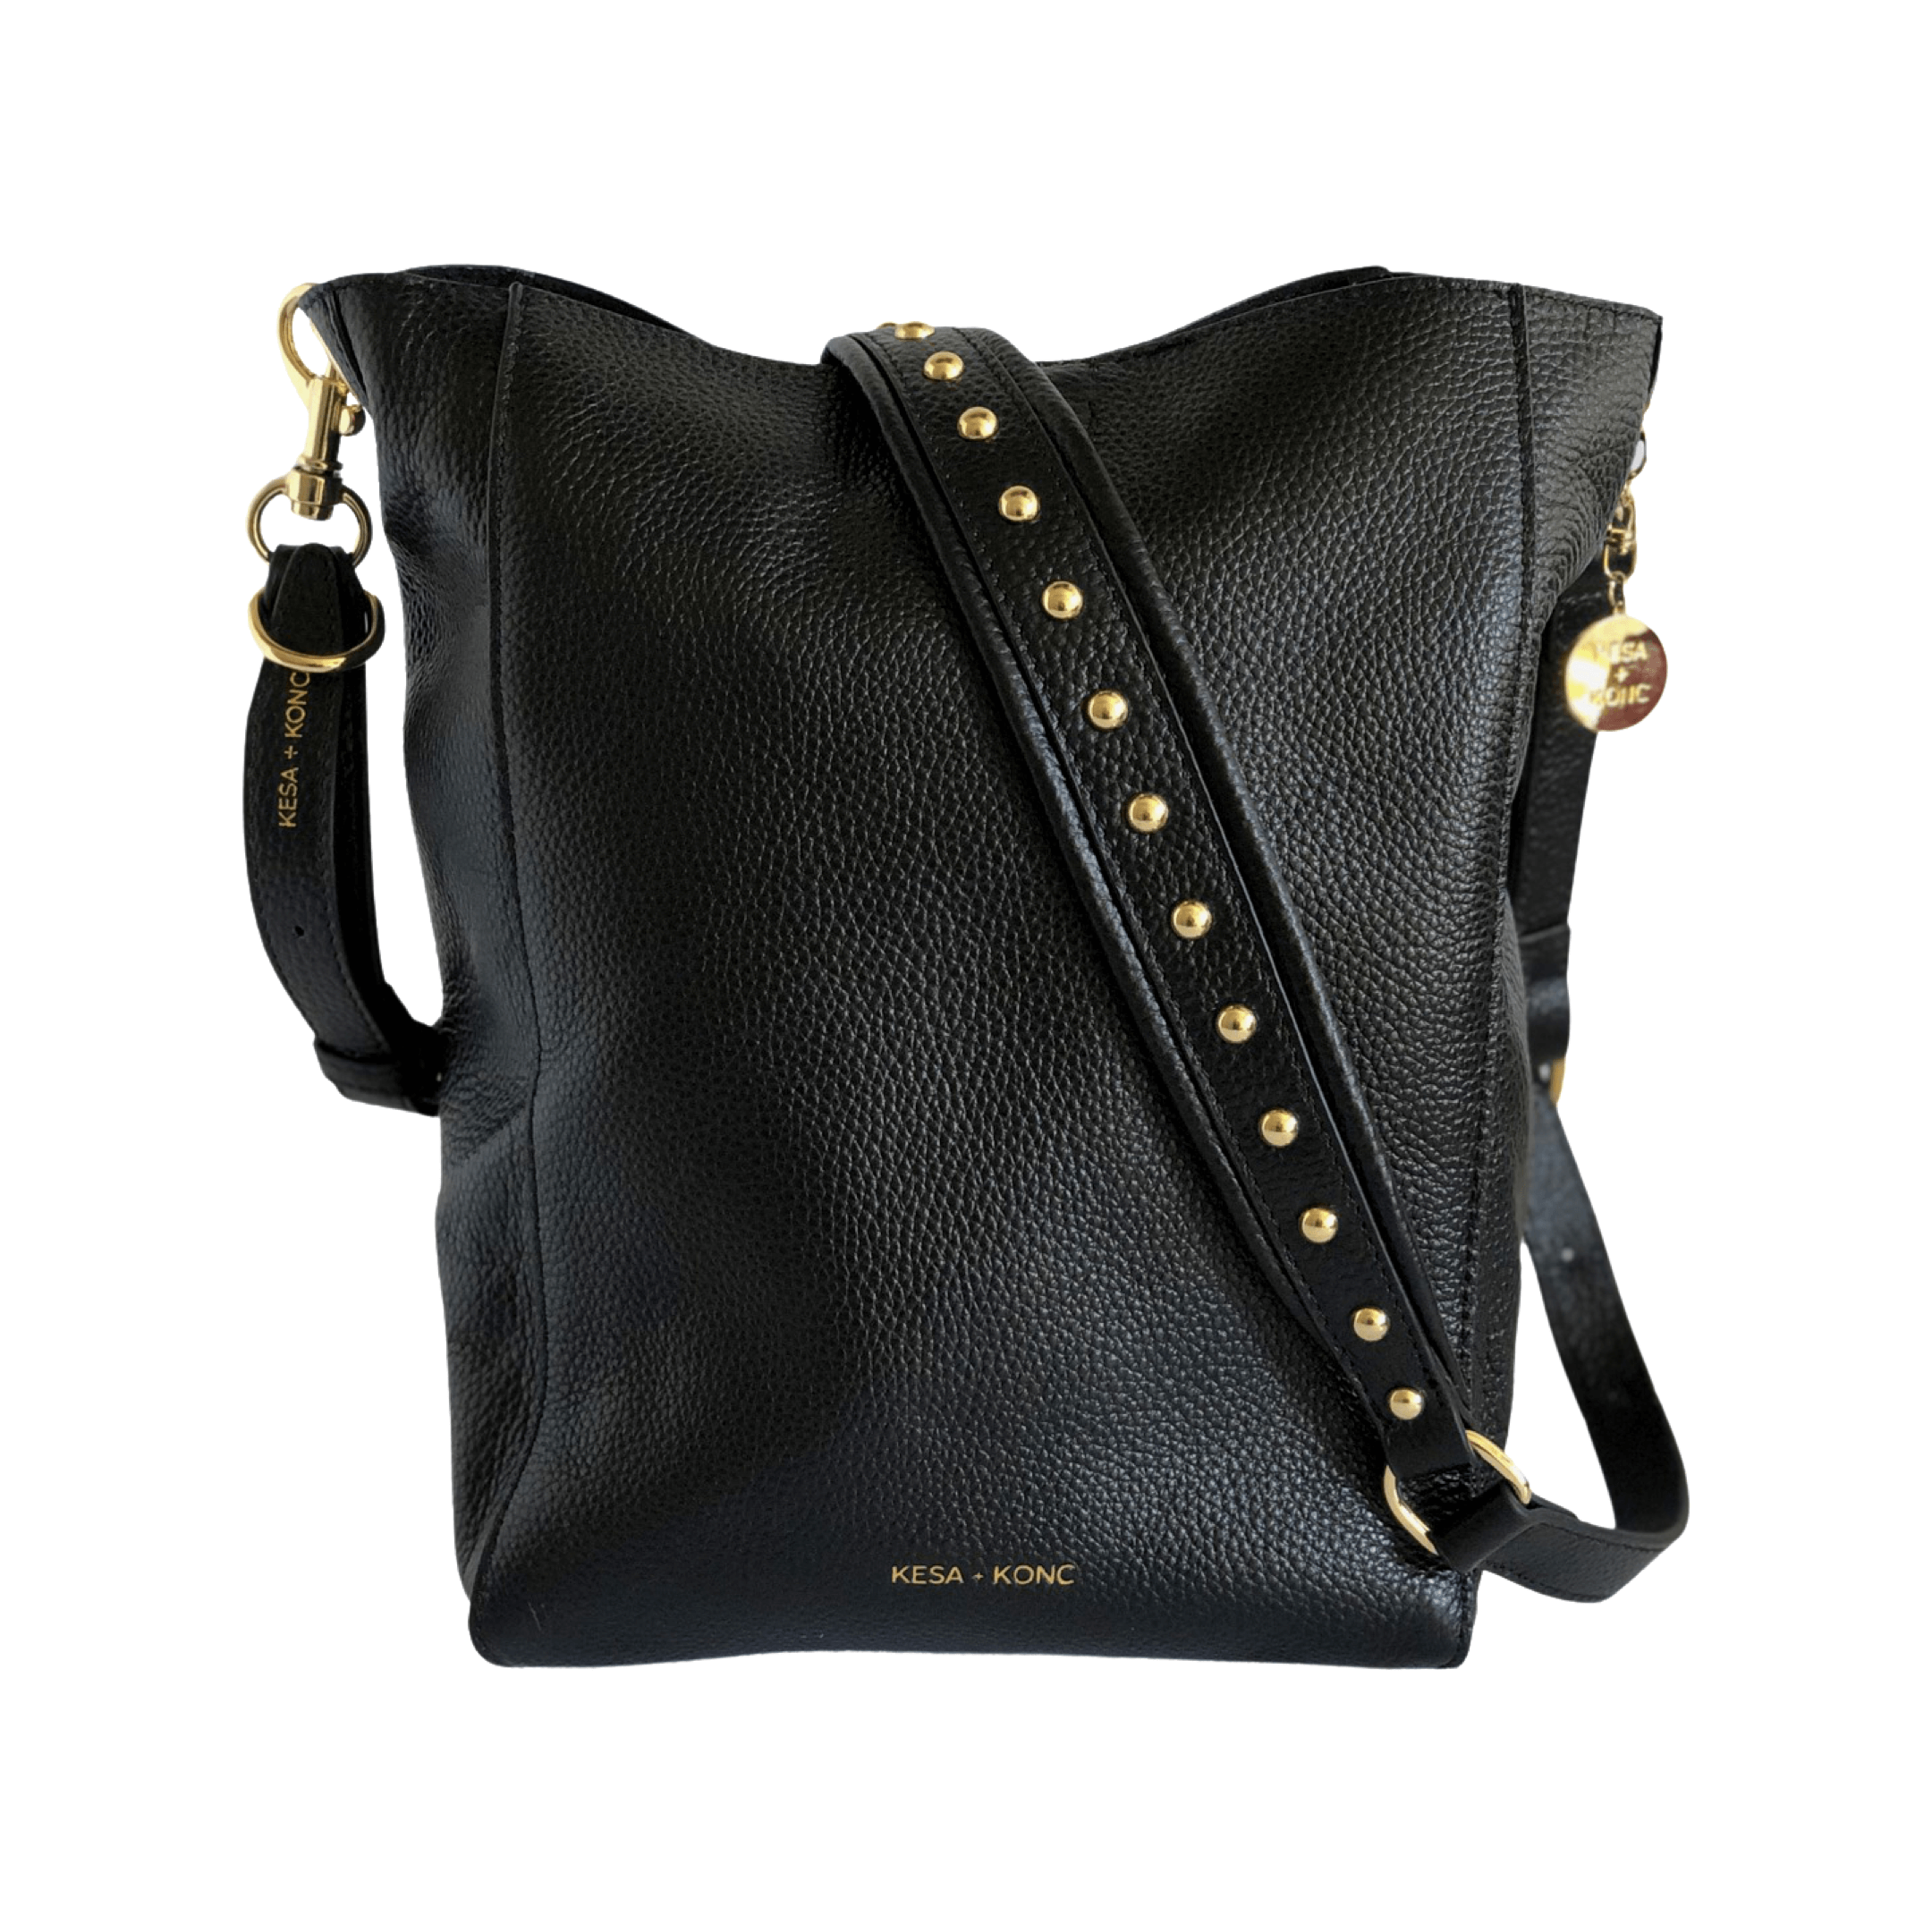 Cora Studded bag strap - Black